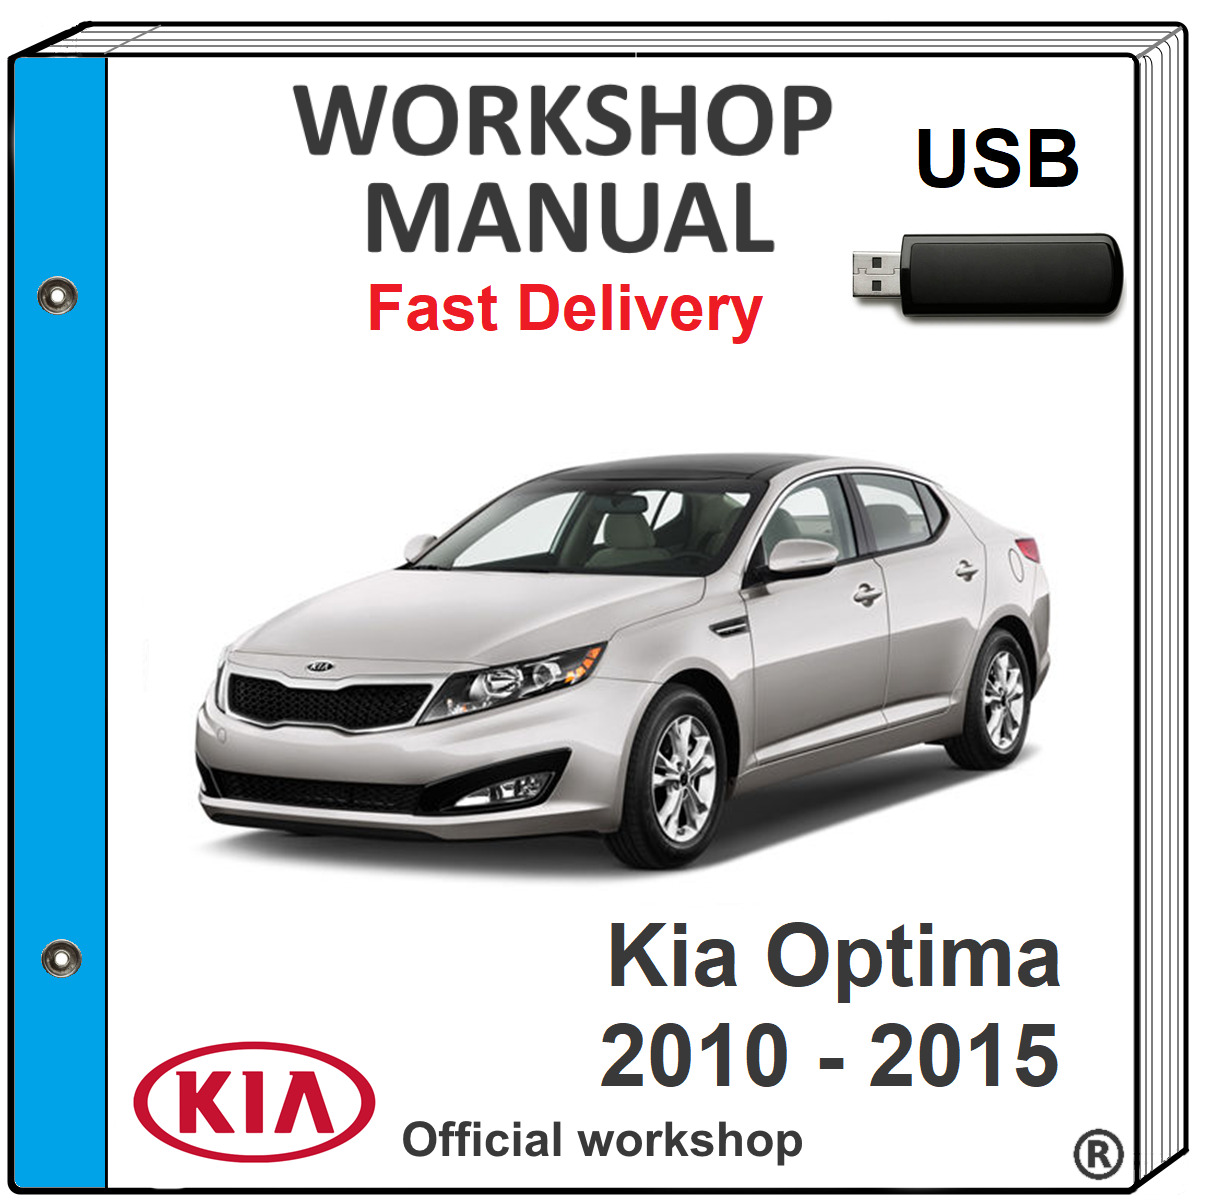 KIA OPTIMA 2010 2011 2012 2013 2014 2015 SERVICE REPAIR WORKSHOP MANUAL USB